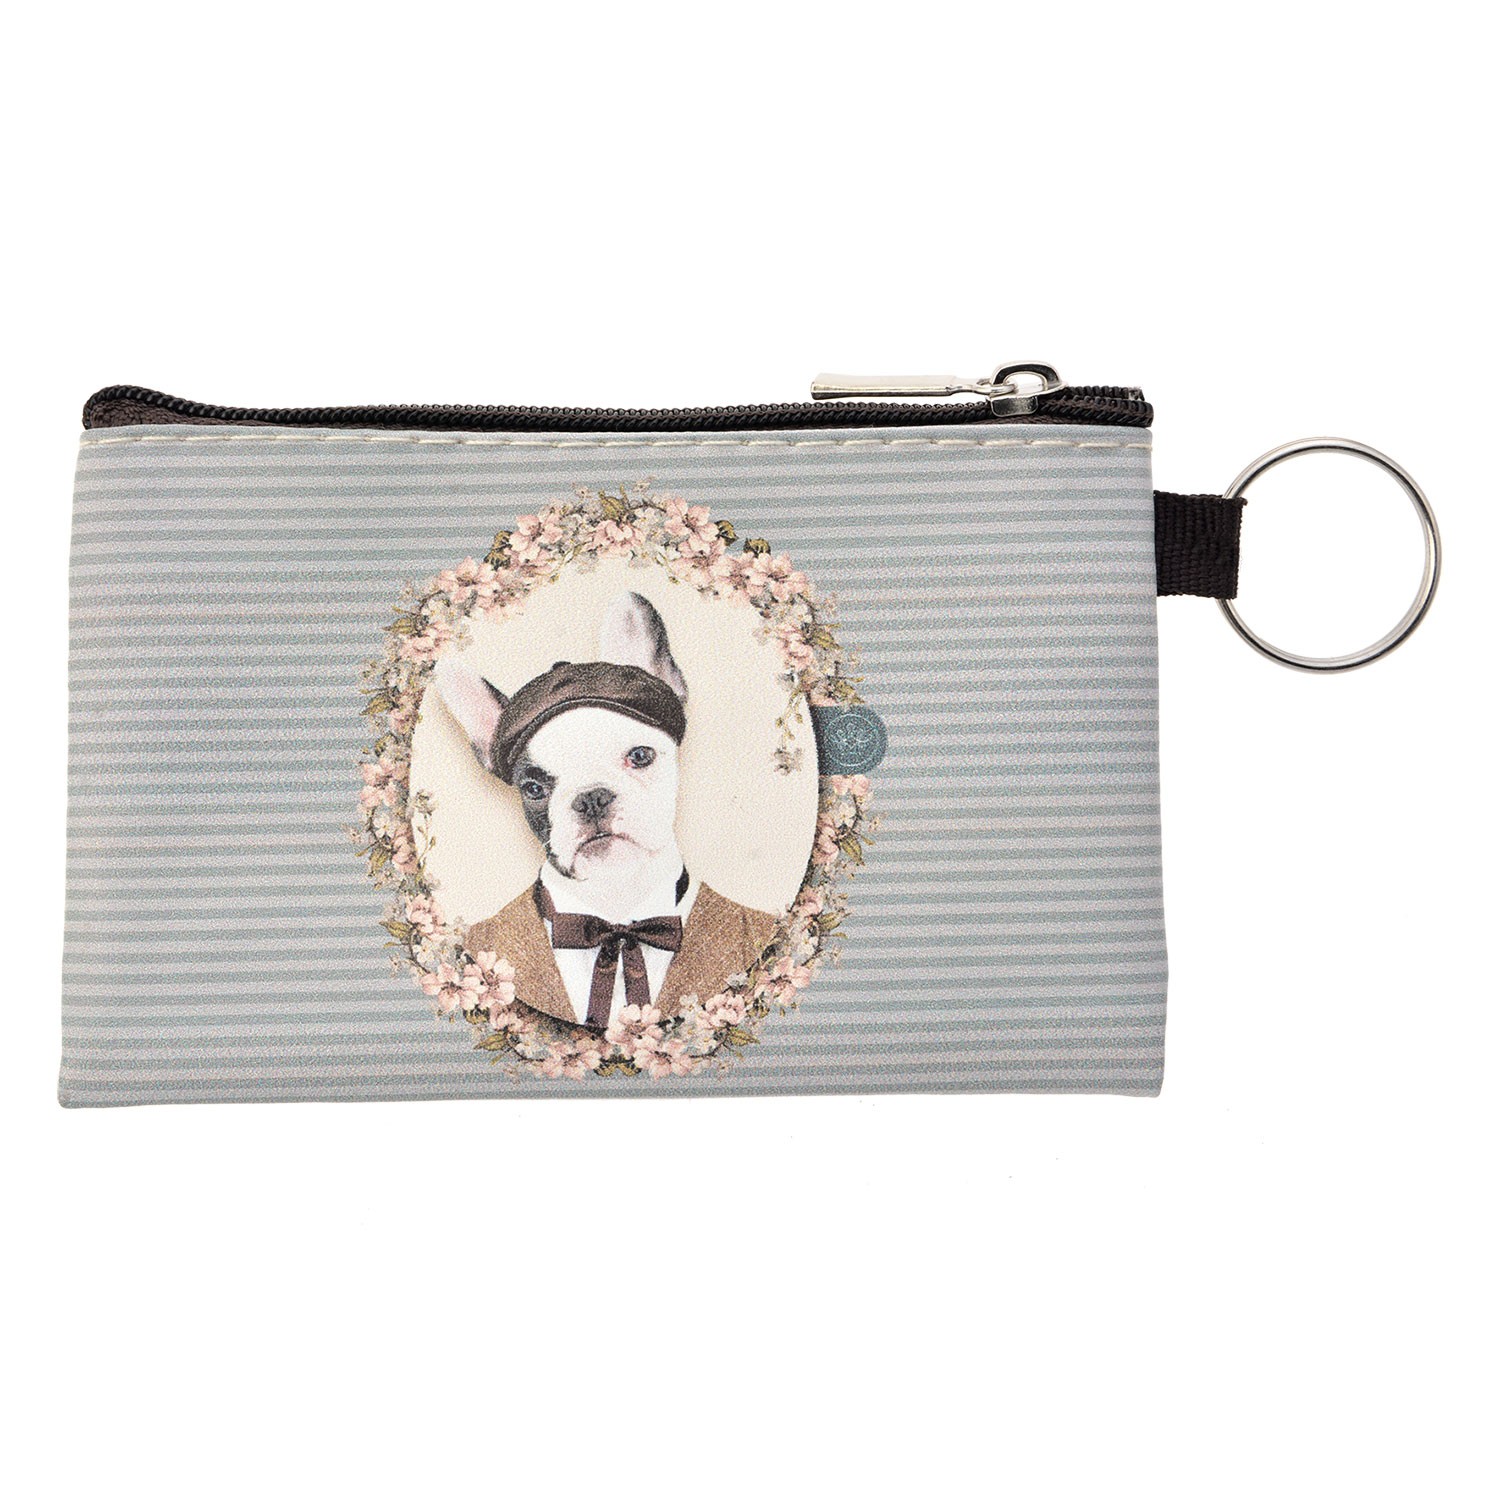 Šedo-modrá peněženka s pejskem Doggy  - 12*8 cm Clayre & Eef